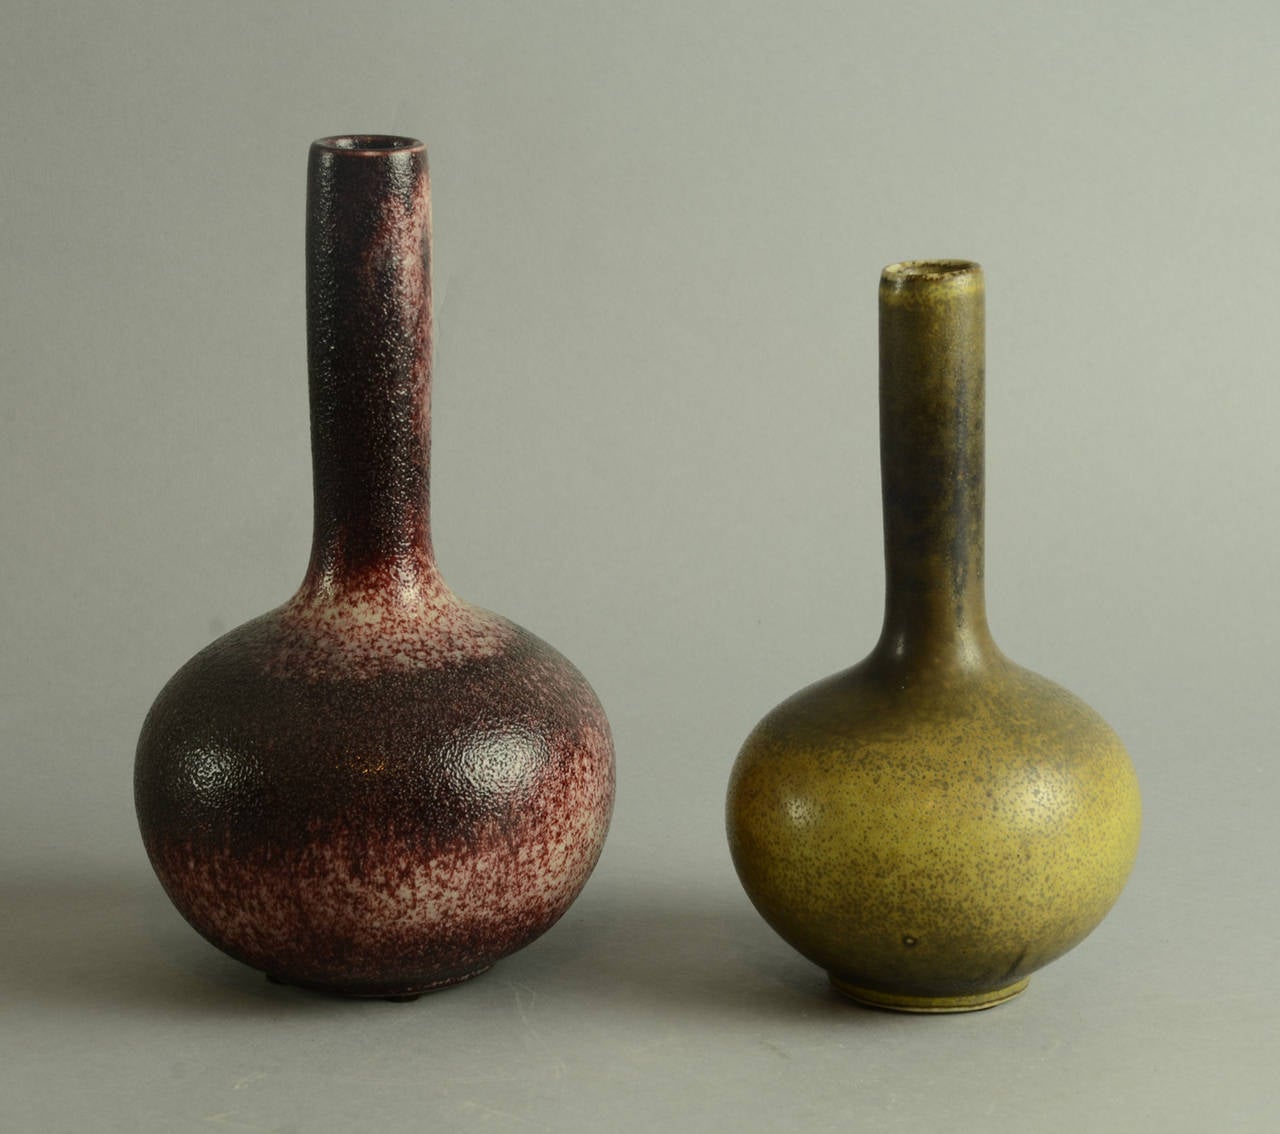 1. Stoneware bottle vase with orange-peel textured oxblood glaze, 1960s.
Height 9 1/2" (24cm) Width 5 1/2" (14cm) No. N7606

2. Gourd-shaped bottle vase with solfatara glaze, 1964
Height 8" (20cm) Width 4 1/2" (11.5cm)No.